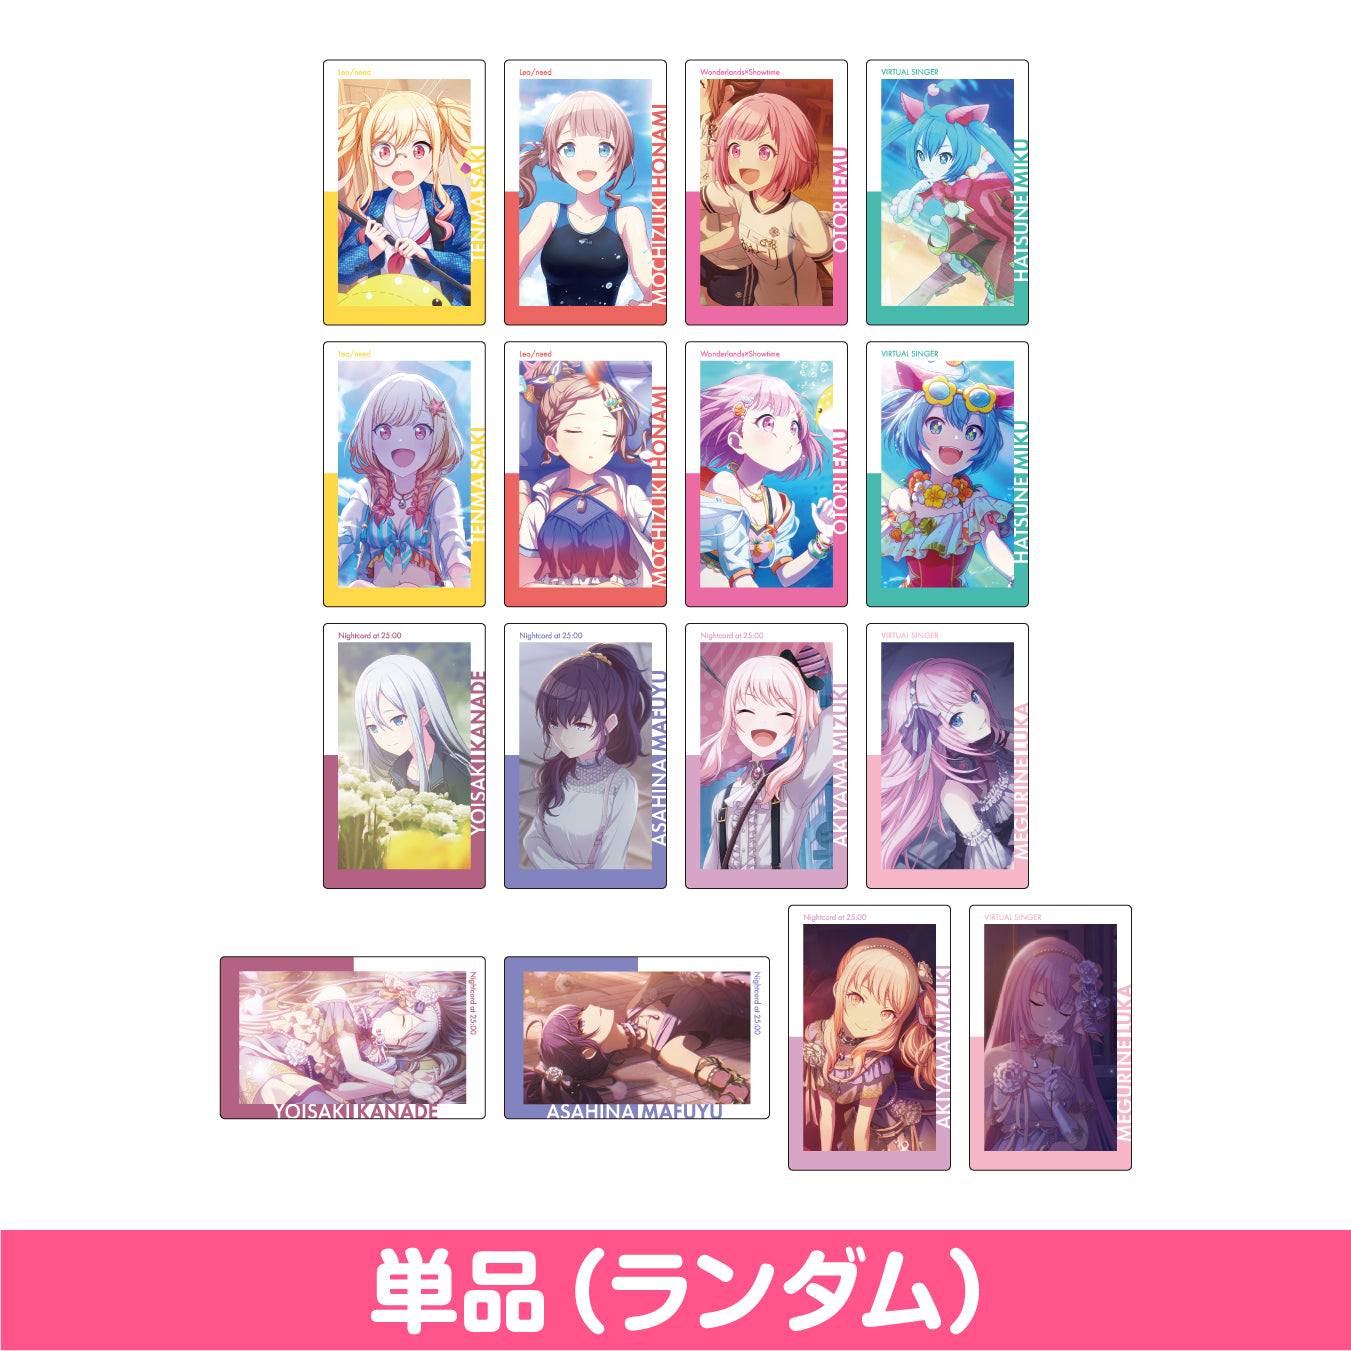 【予約商品】ePick card series vol.4 B